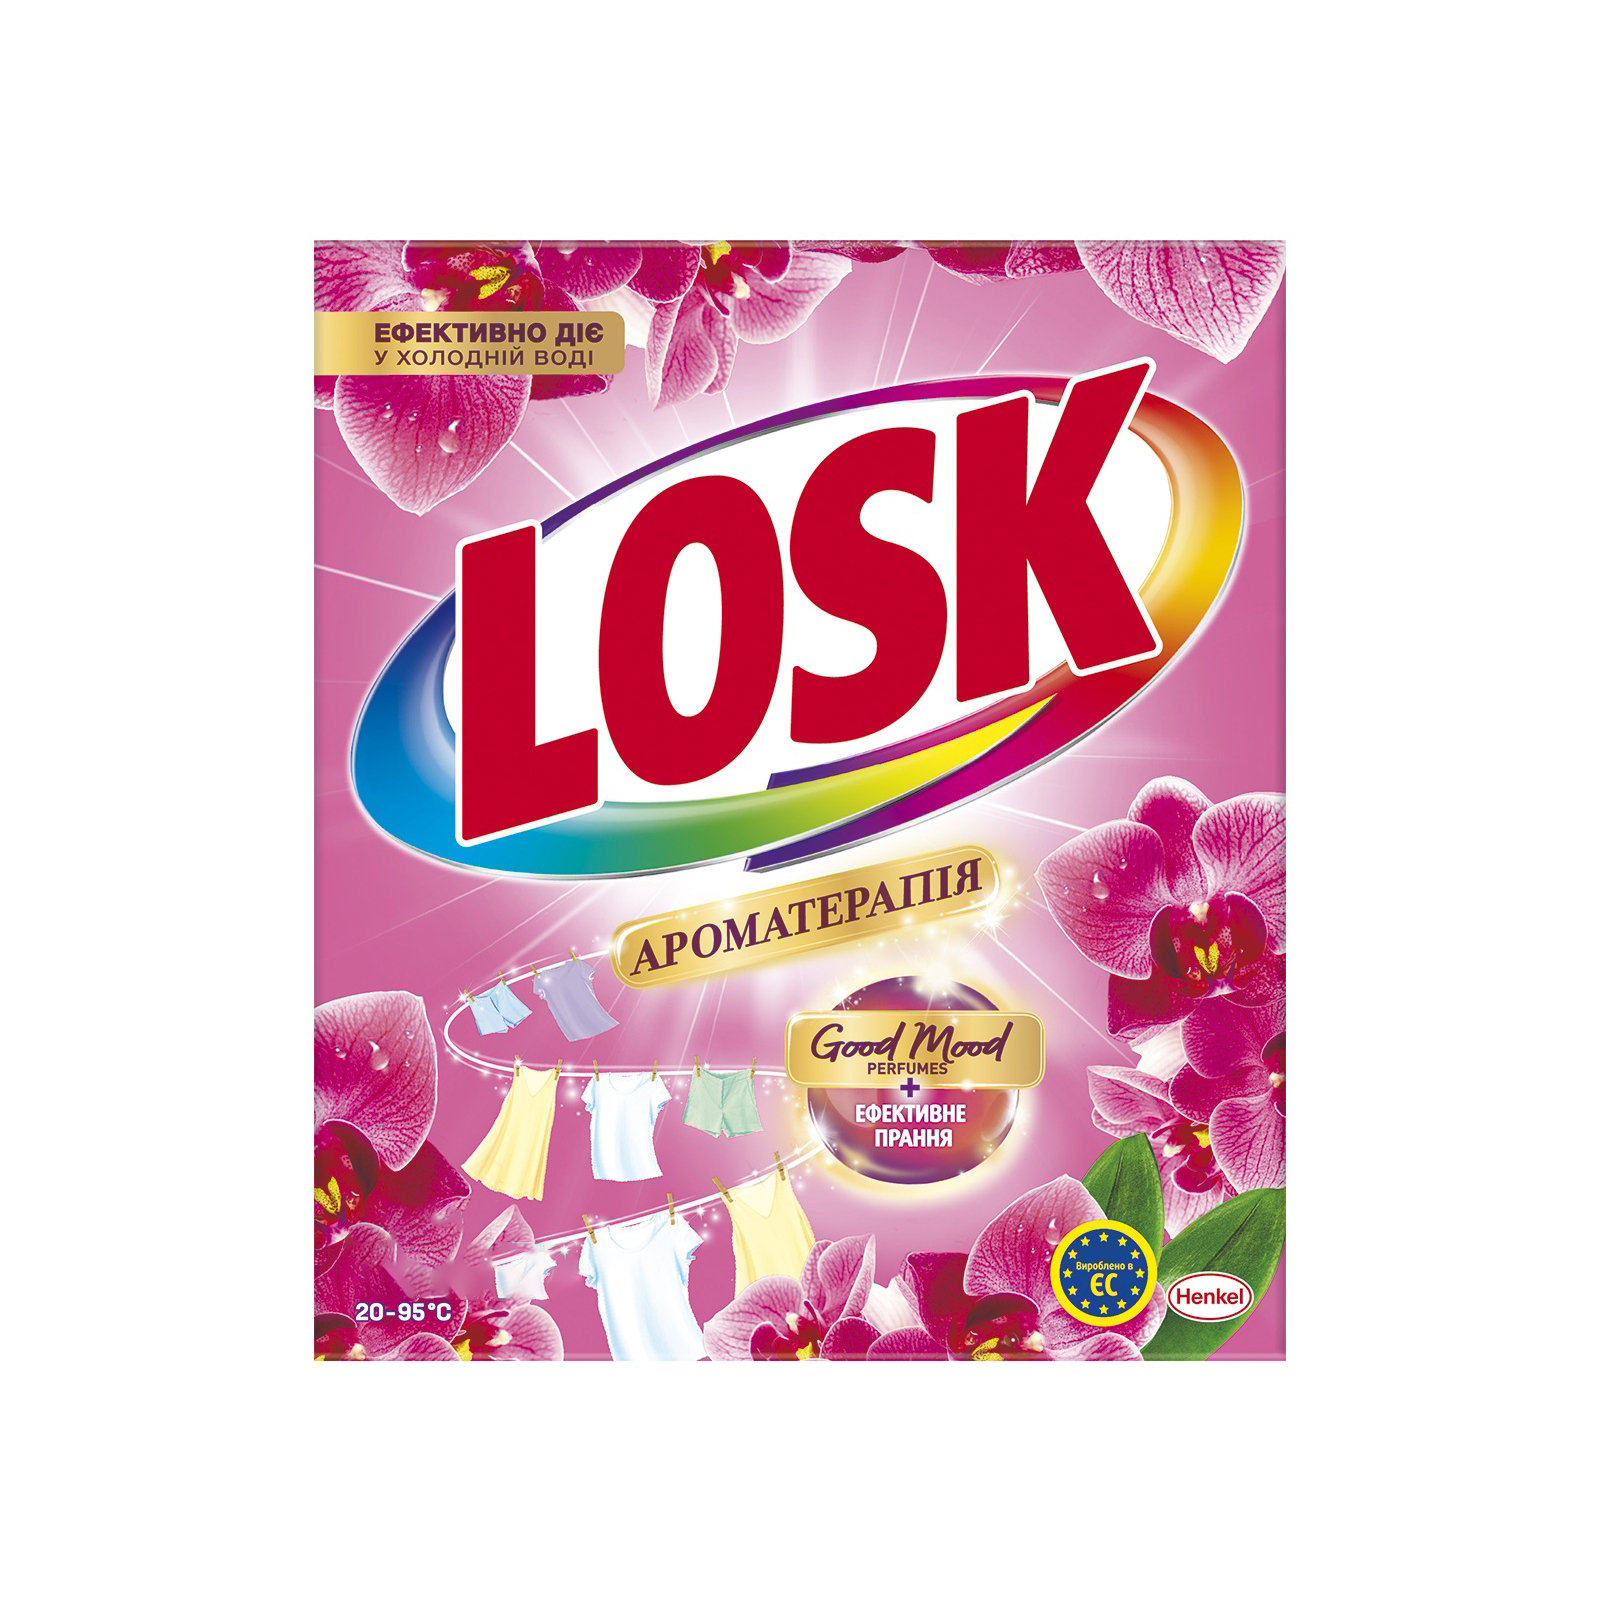 Стиральный порошок Losk Ароматерапия Эфирные масла и аромат Малазийского цветка 400 г (9000101575361)